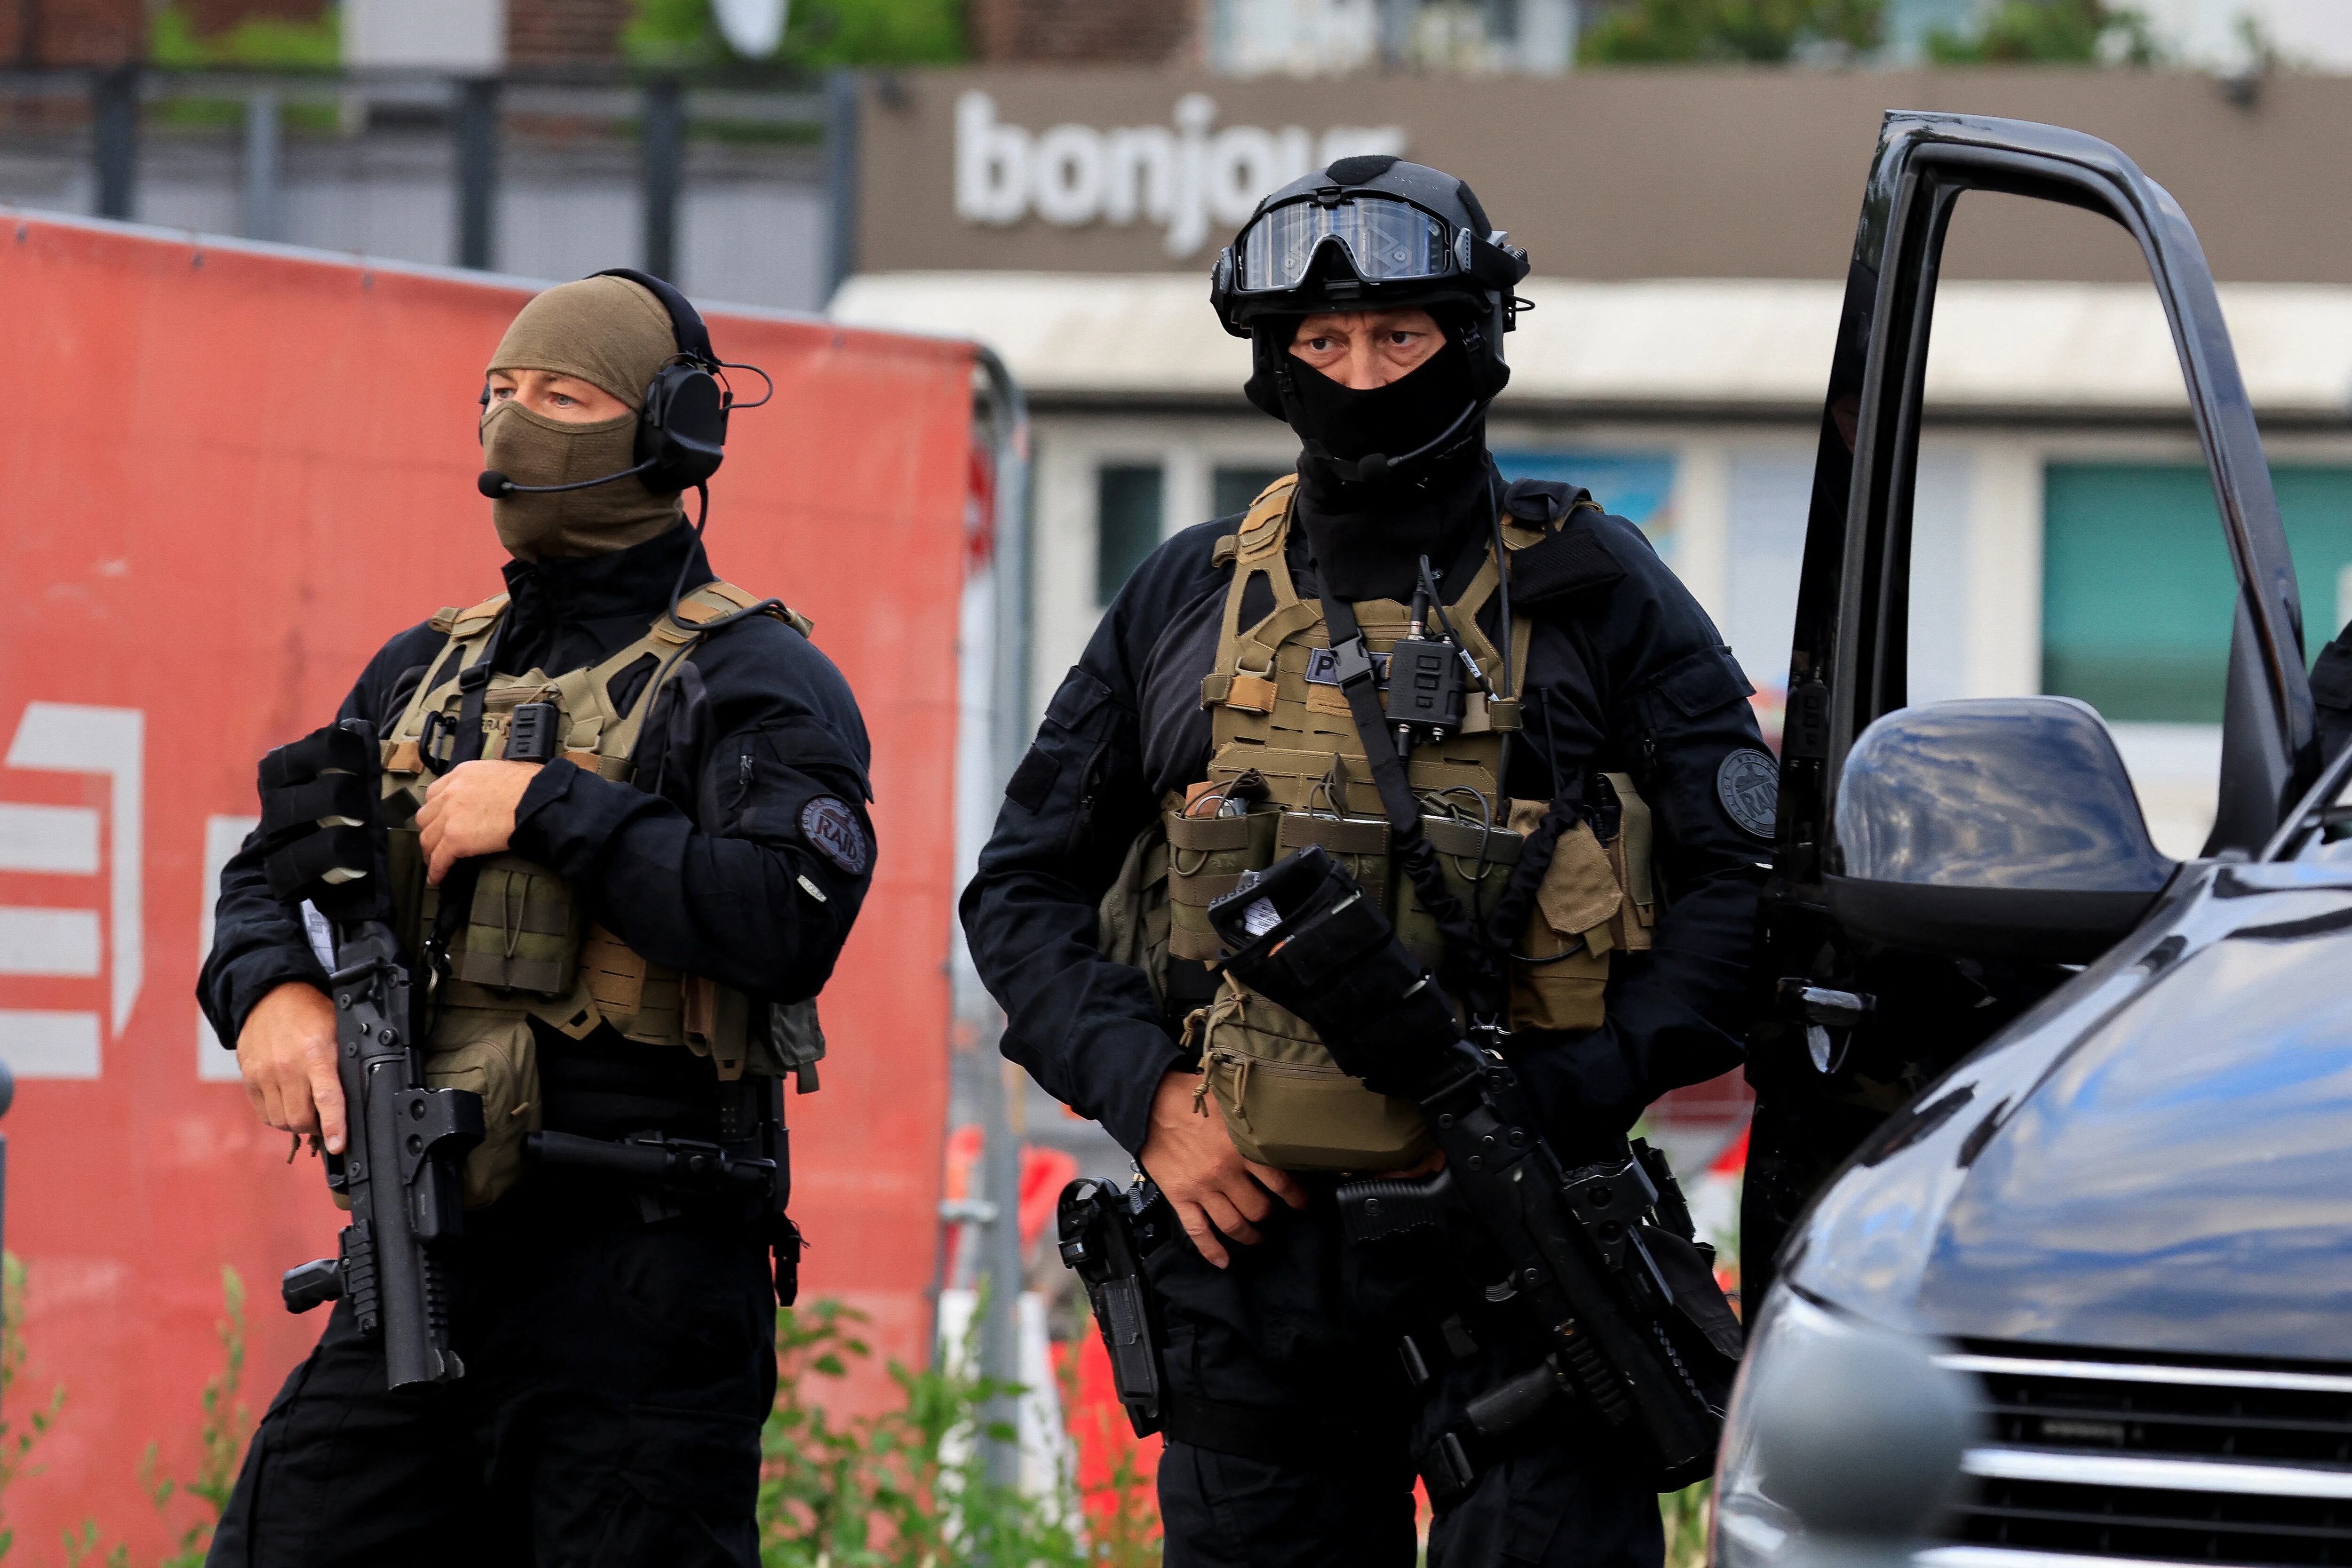 El gobierno francés busca ampliar la autoridad policial a través de la tecnología (REUTERS/Pascal Rossignol Rossignol)